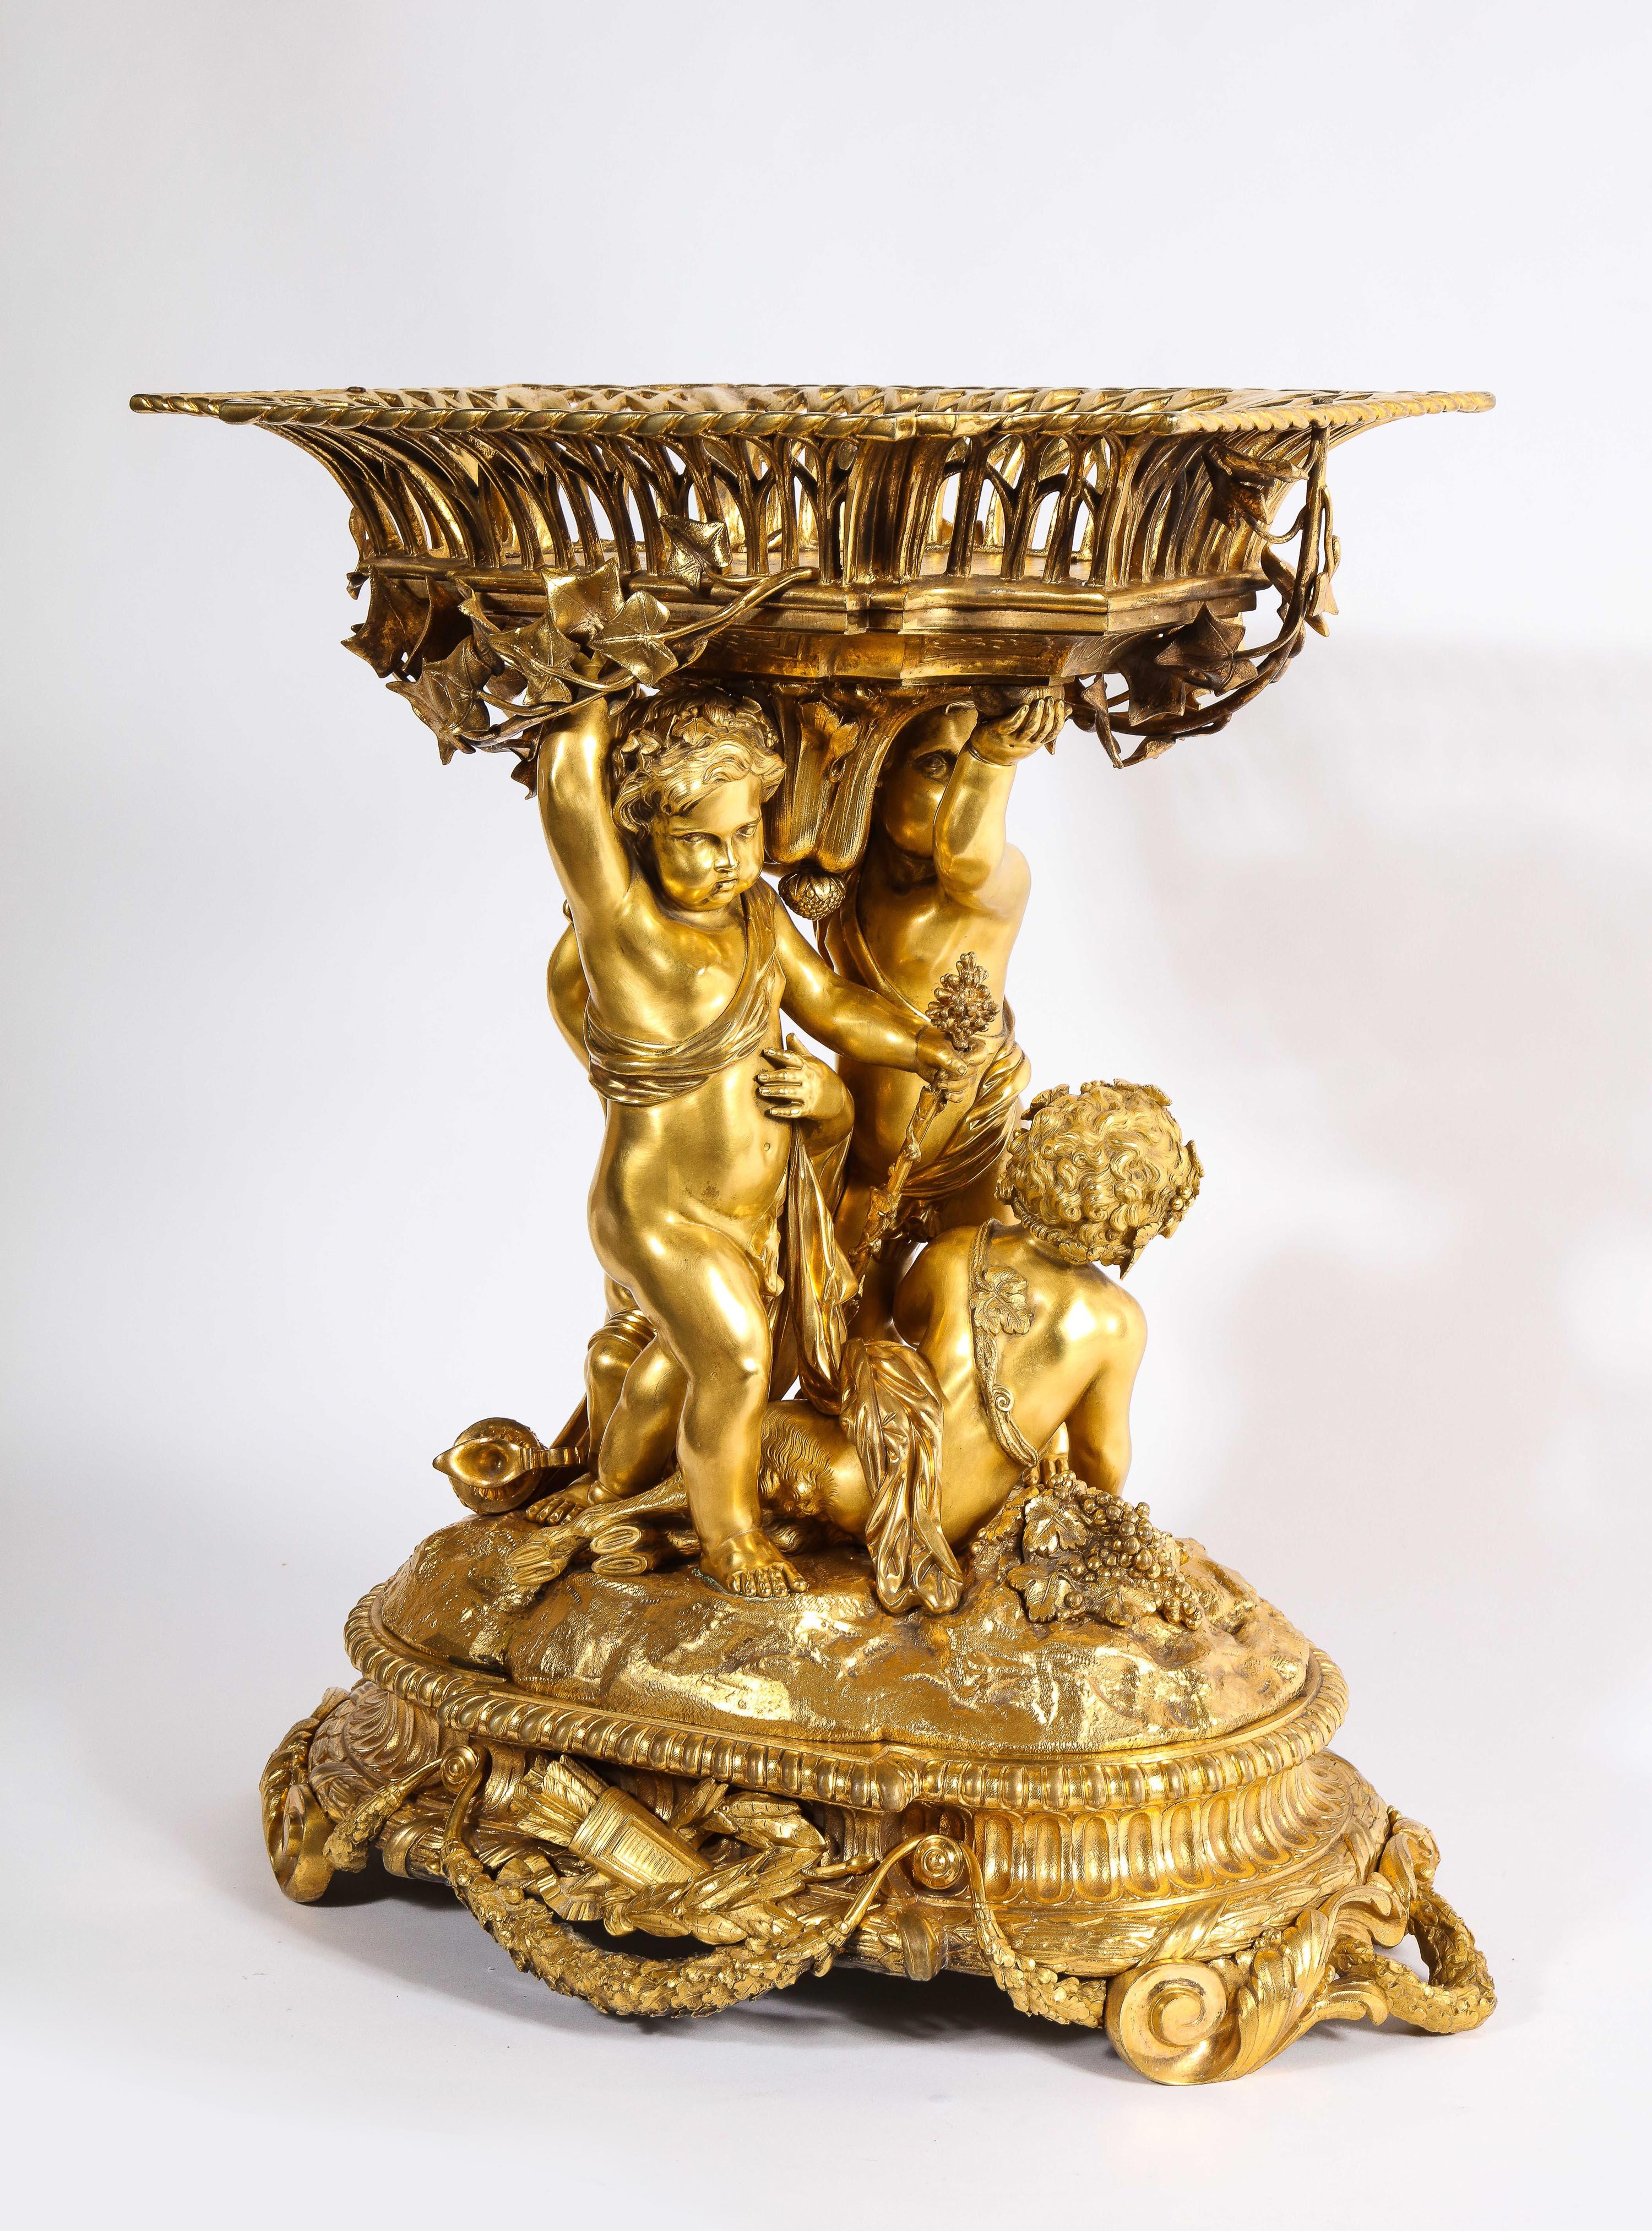 Un exquis centre de table Napoléon III en bronze doré, Circa 1880, Attribué à Alfred Emmanuel Louis Beurdeley.

Représentant quatre chérubins en bronze doré au mercure tenant un panier, la base étant ornée de trophées et d'enroulements. 

Cette